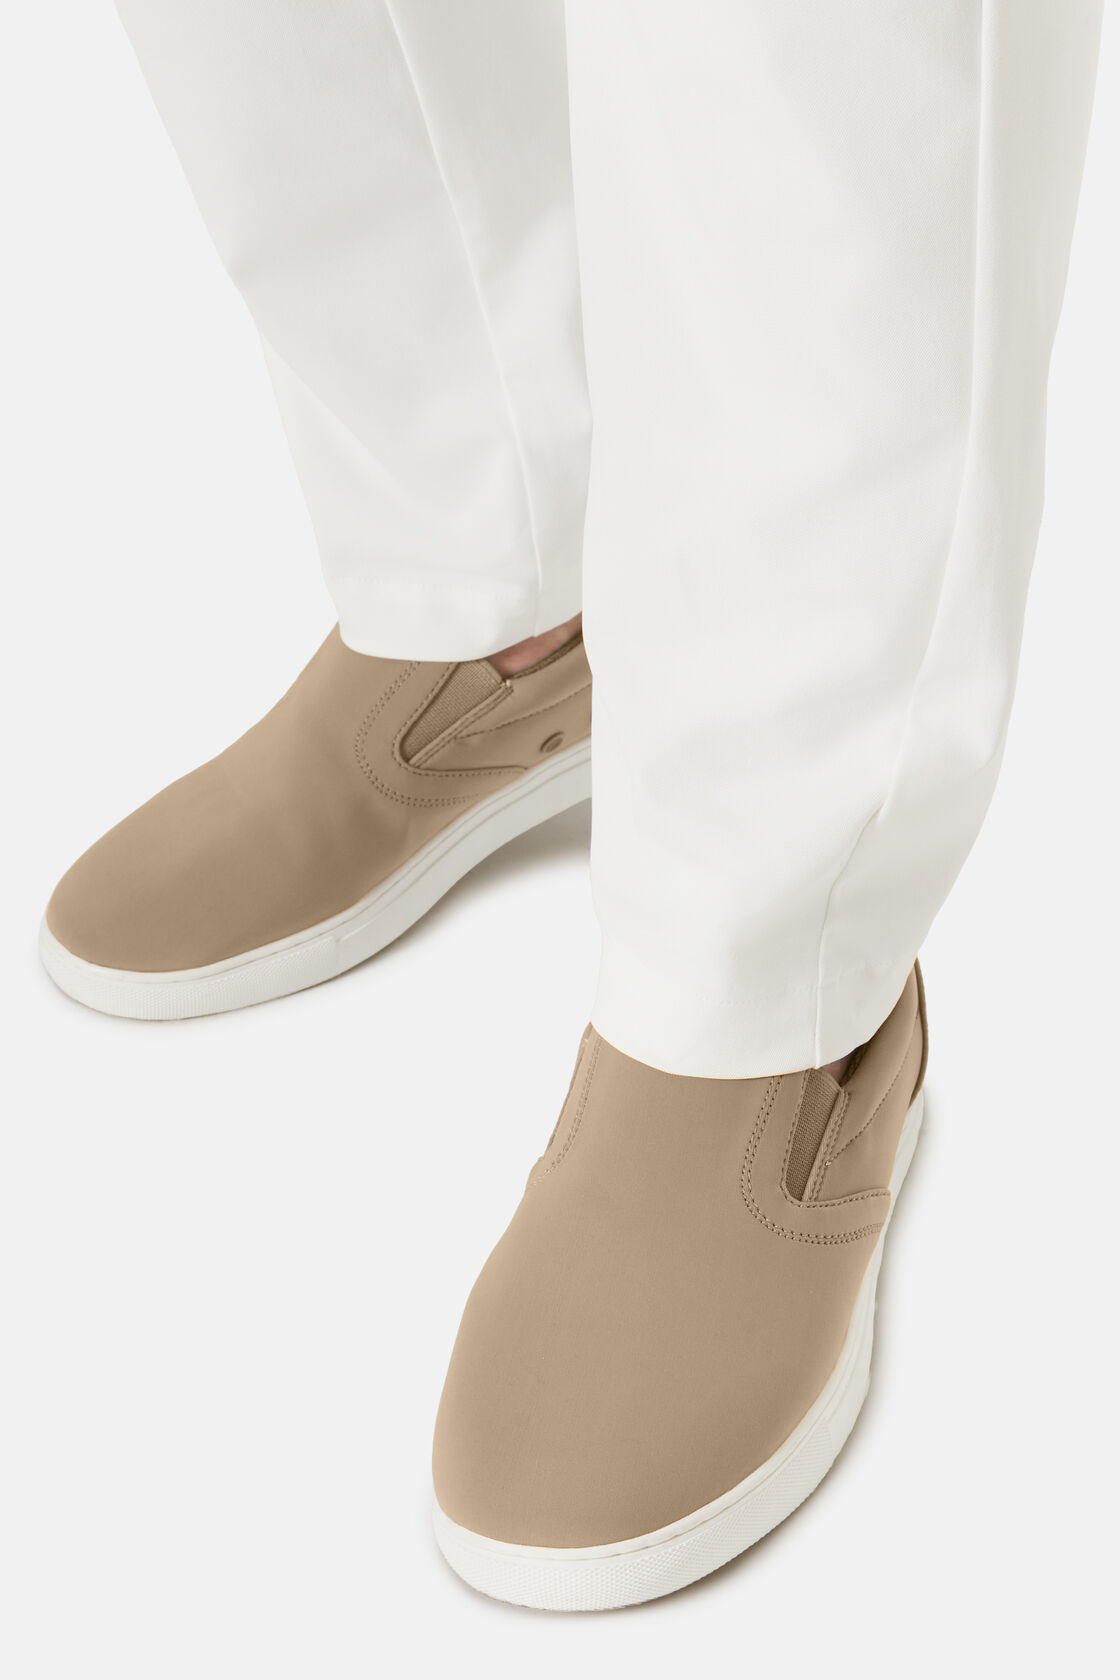 Παπούτσια χωρίς κορδόνια σε μπεζ-γκρι χρώμα, από τεχνικό ύφασμα, Beige, hi-res